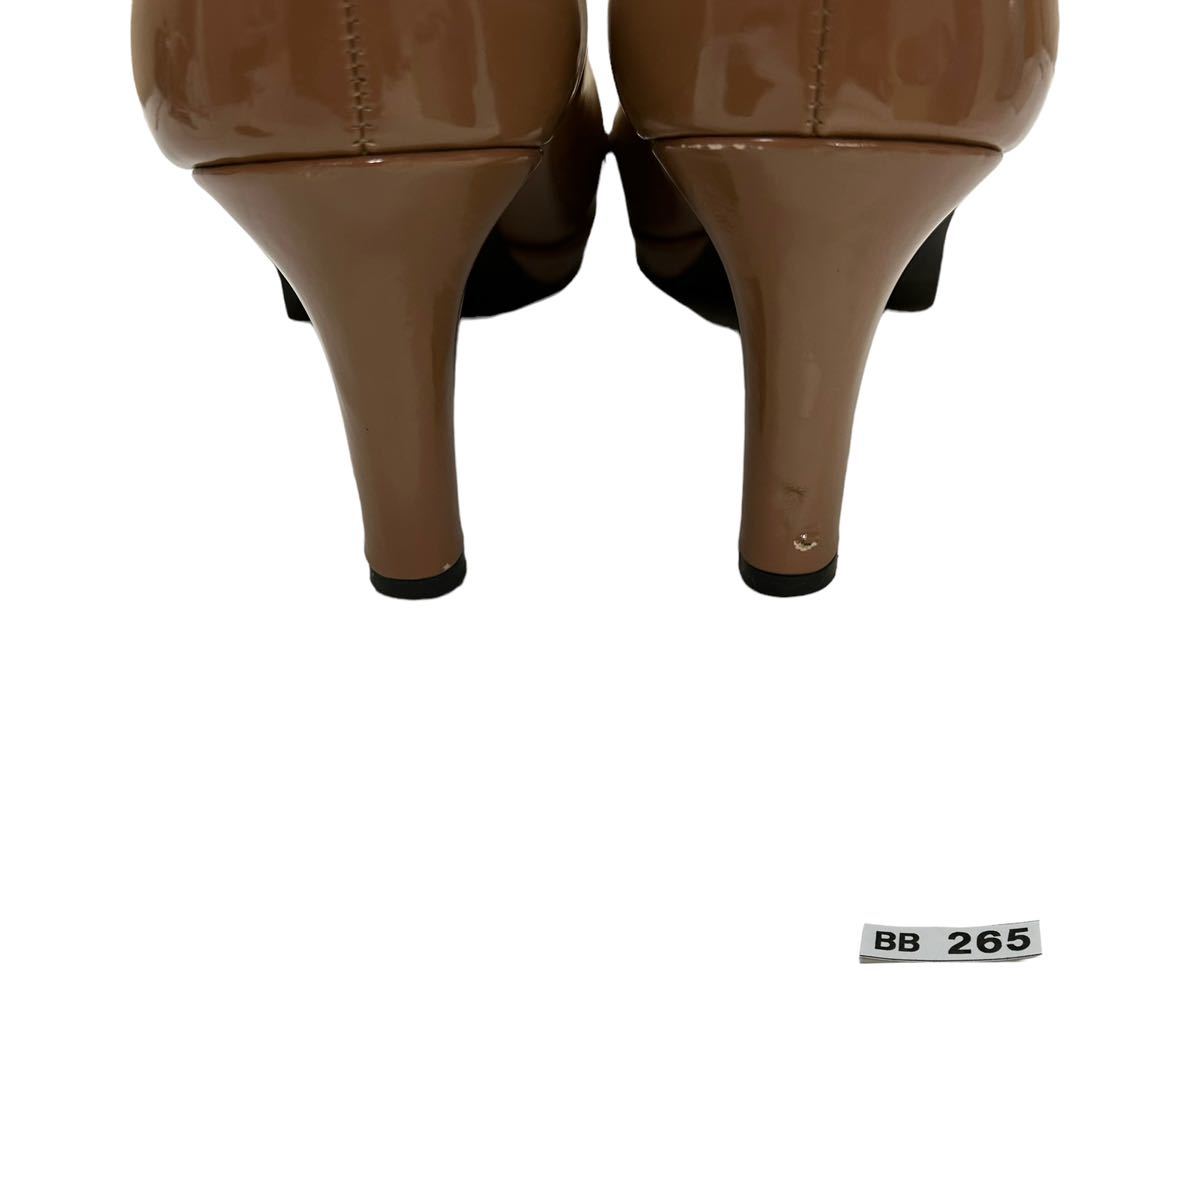 BB265 PRET-A PORTER pre ta Porte женский туфли-лодочки 24.5cm светло-коричневый эмаль сделано в Японии 